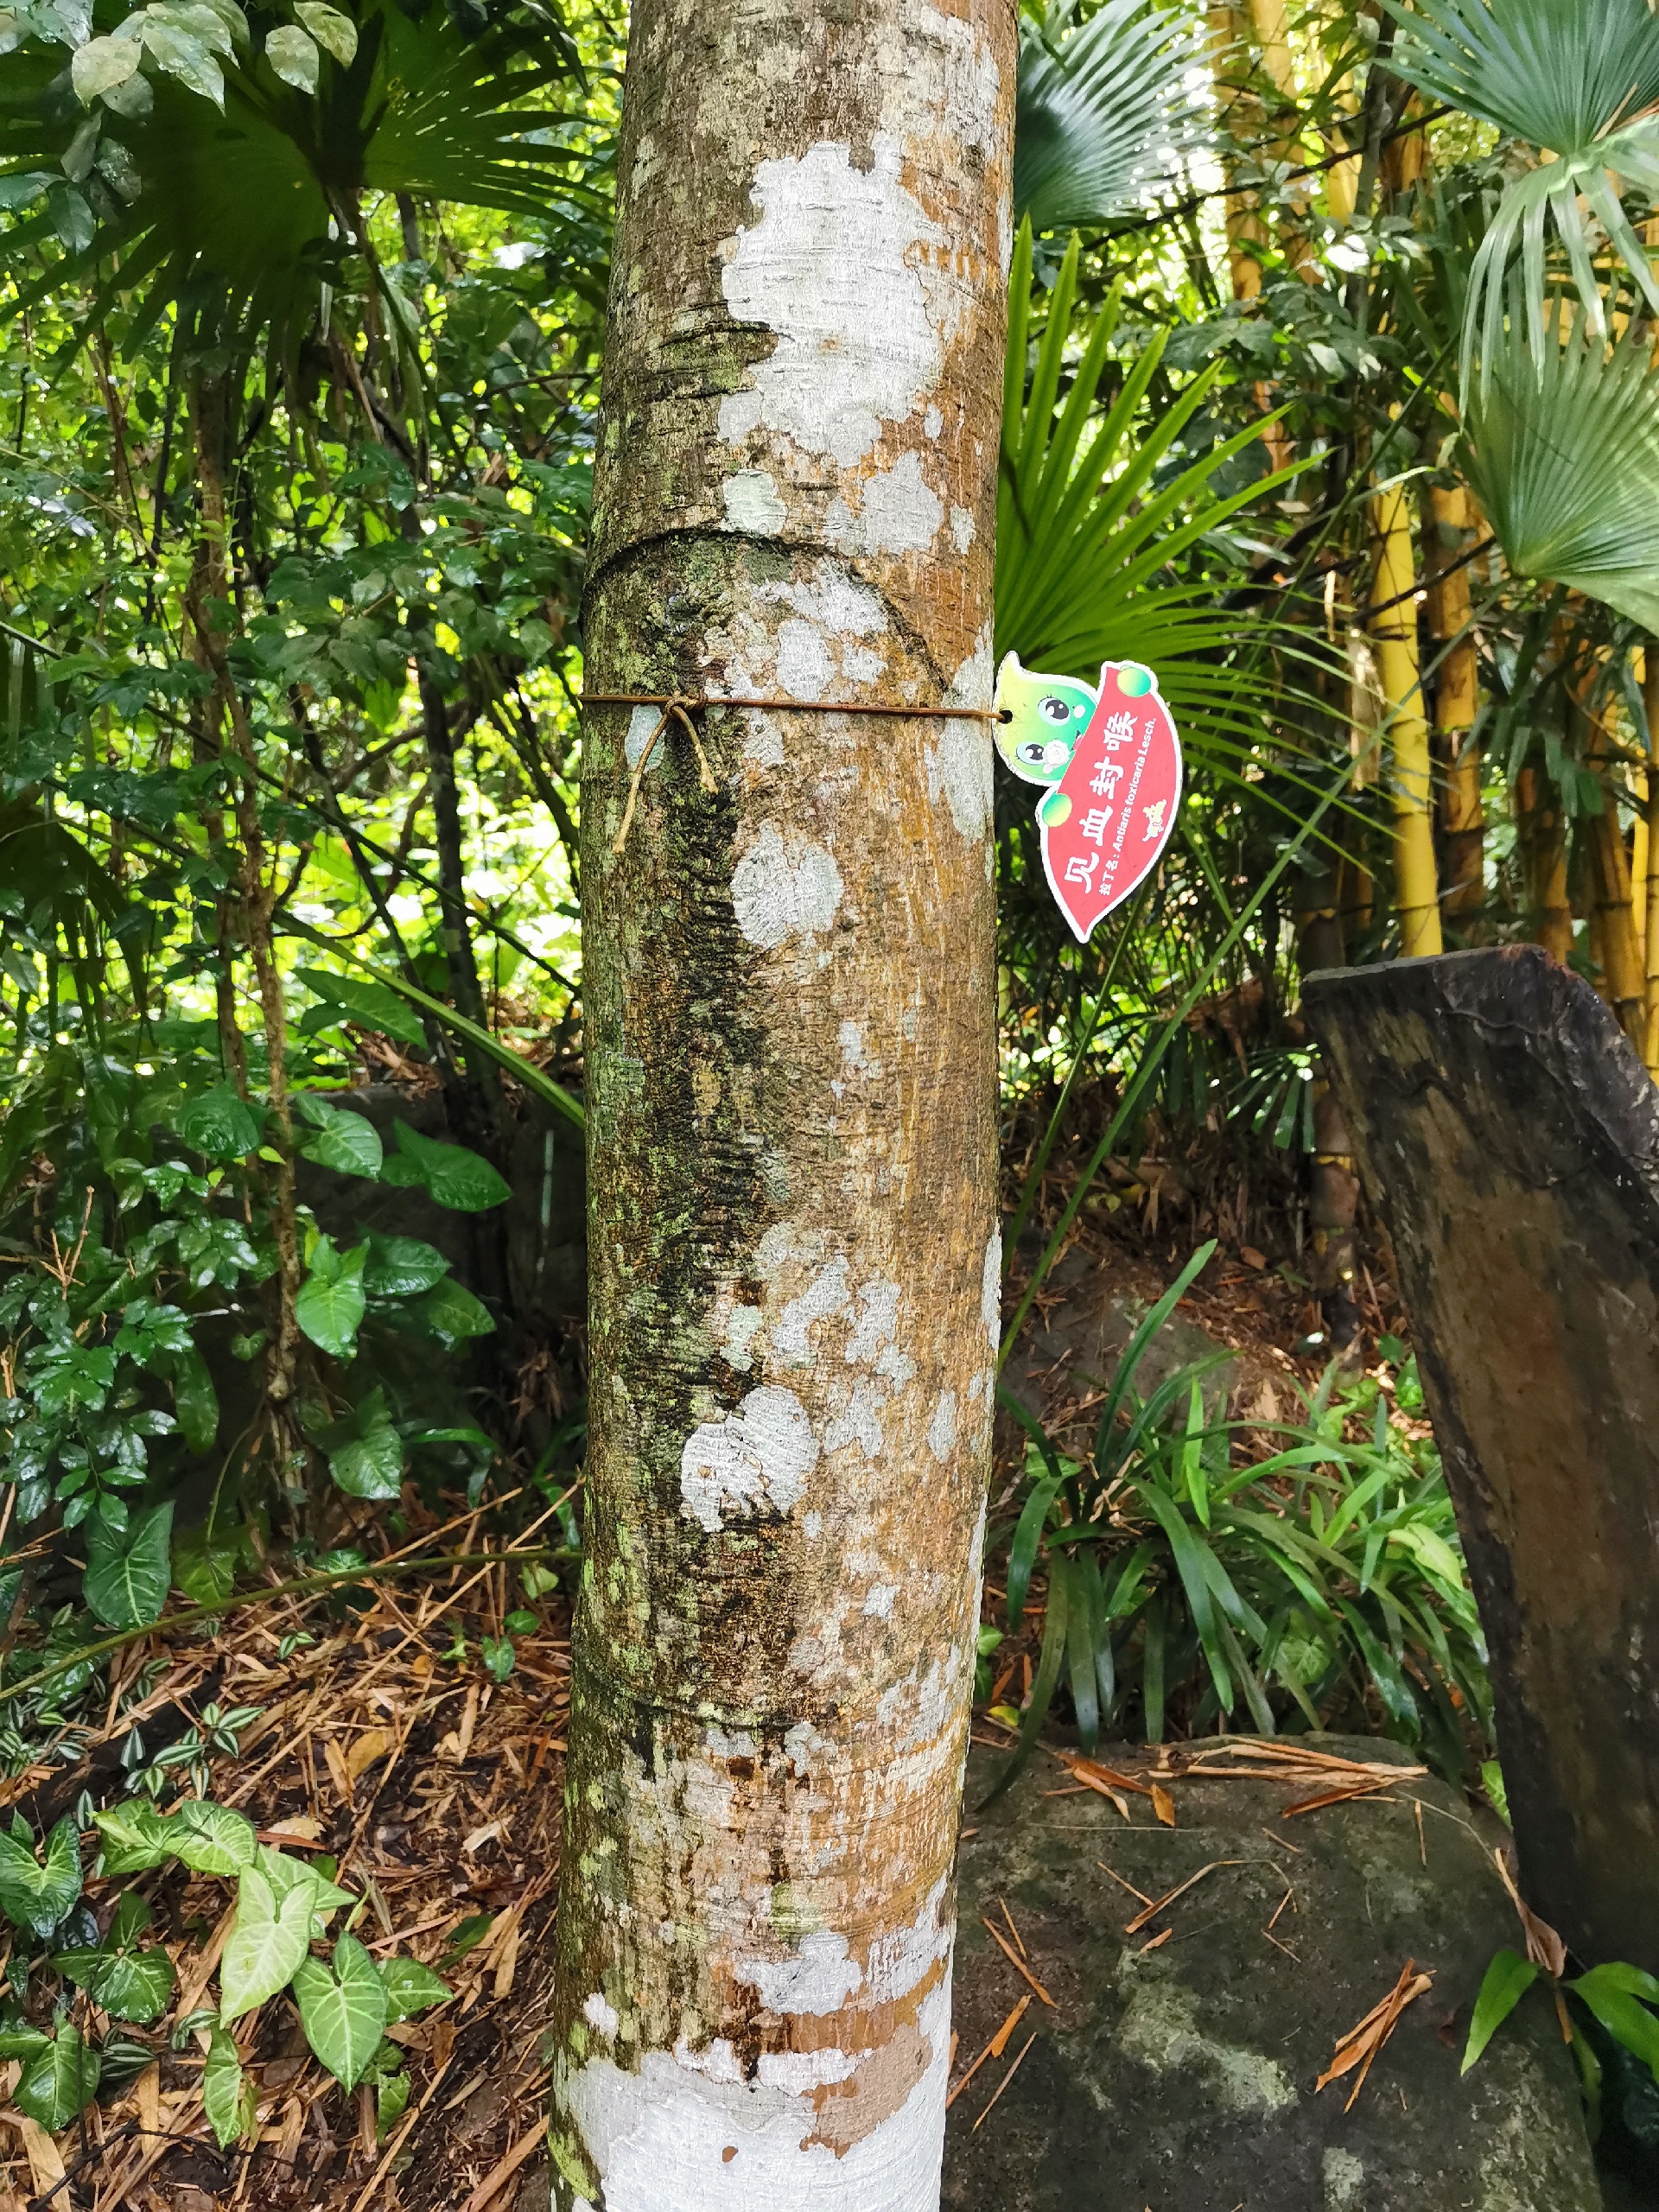 打卡呀诺达热带雨林古树参天，植被茂密，花香鸟语，生机盎然